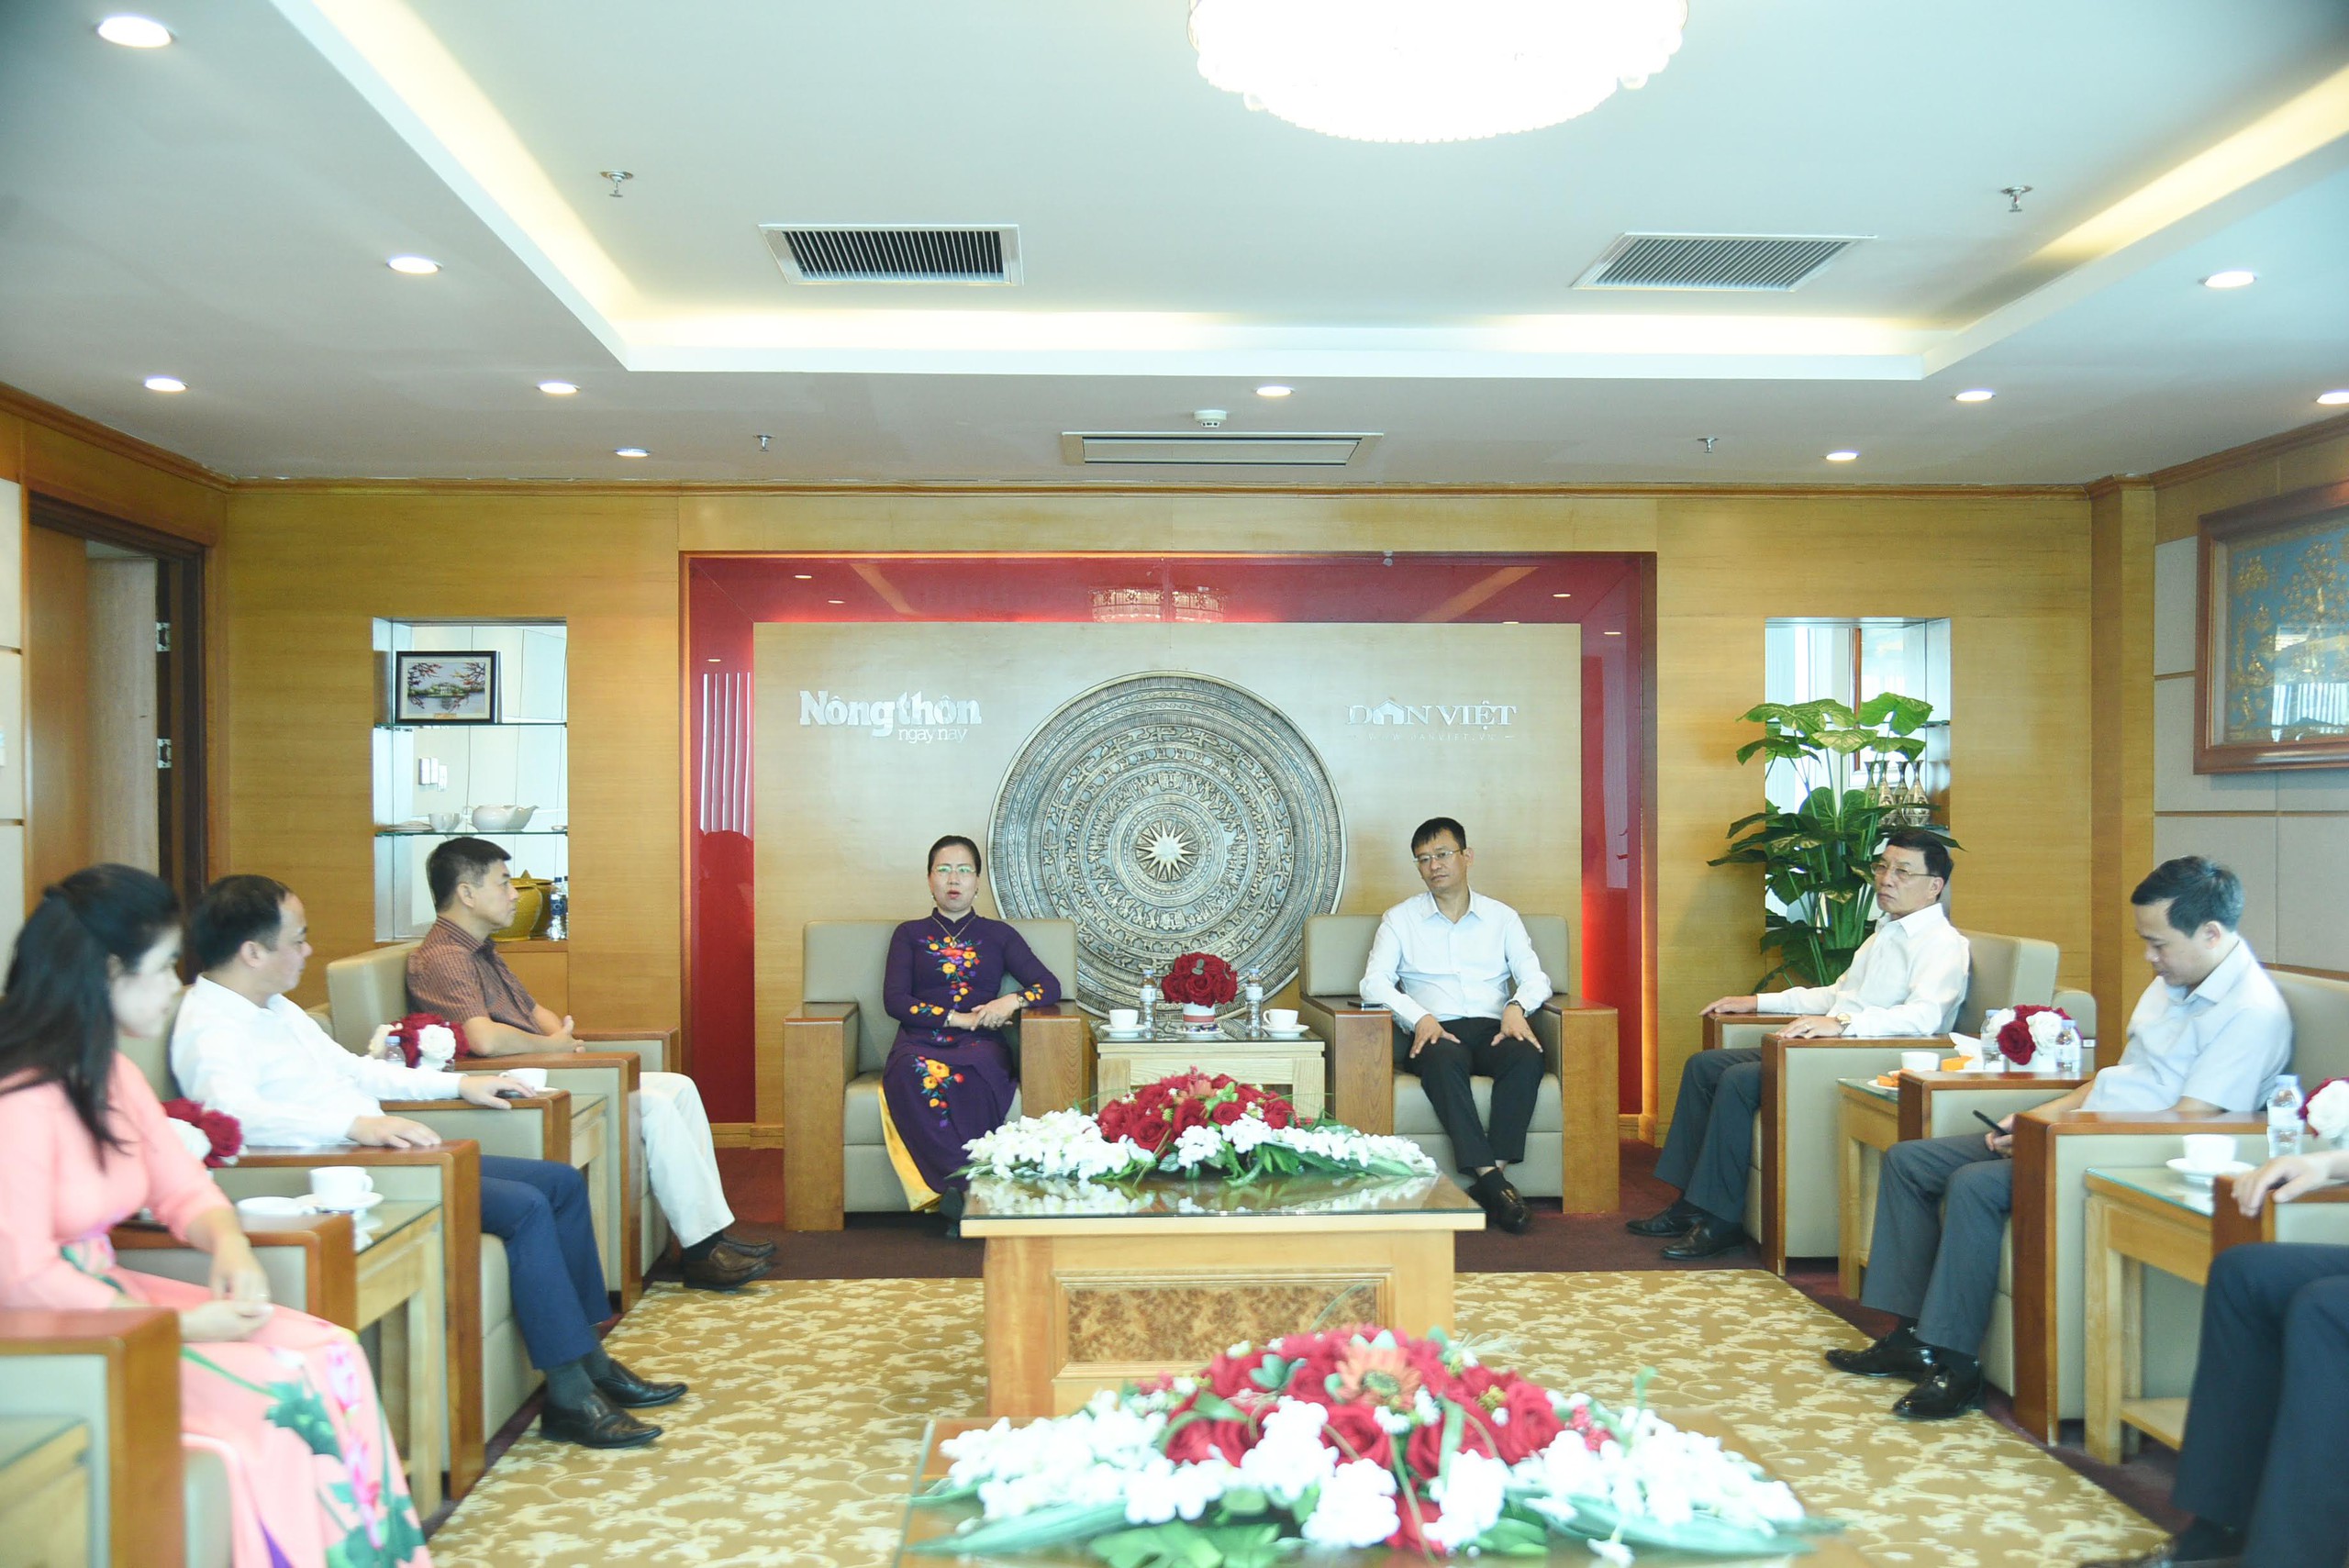 Phó Chủ tịch Hội NDVN Bùi Thị Thơm: Đổi mới công tác thông tin, tuyên truyền là nhiệm vụ trọng tâm trong giai đoạn mới- Ảnh 1.